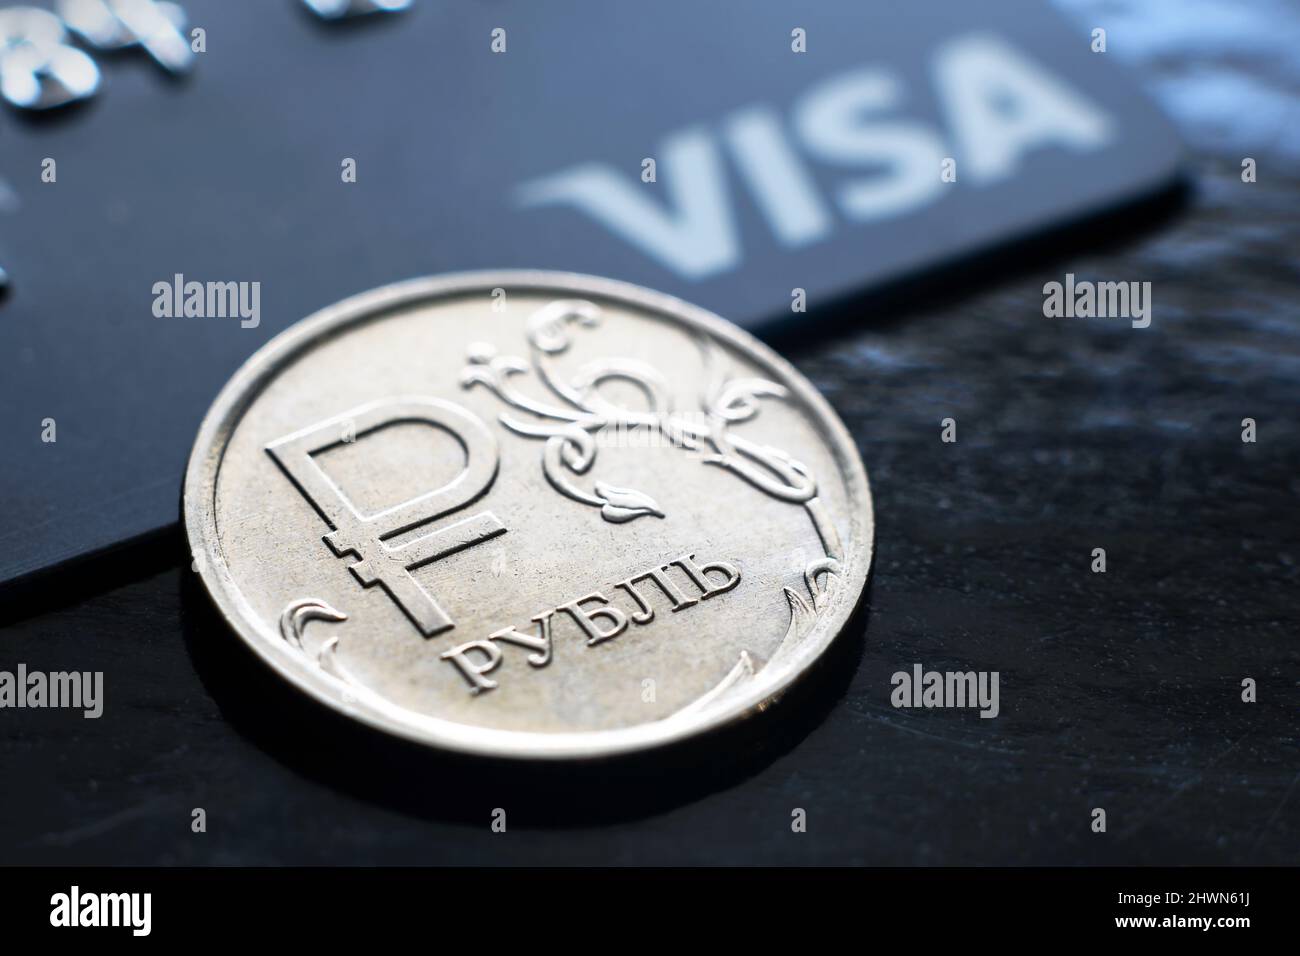 Moskau - 6. März 2022: Rubel-Münze und Visa-Kreditkarte, russisches Geld steht unter dem Druck von Sanktionen. Konzept der Währung, stornierte Transaktionen a Stockfoto